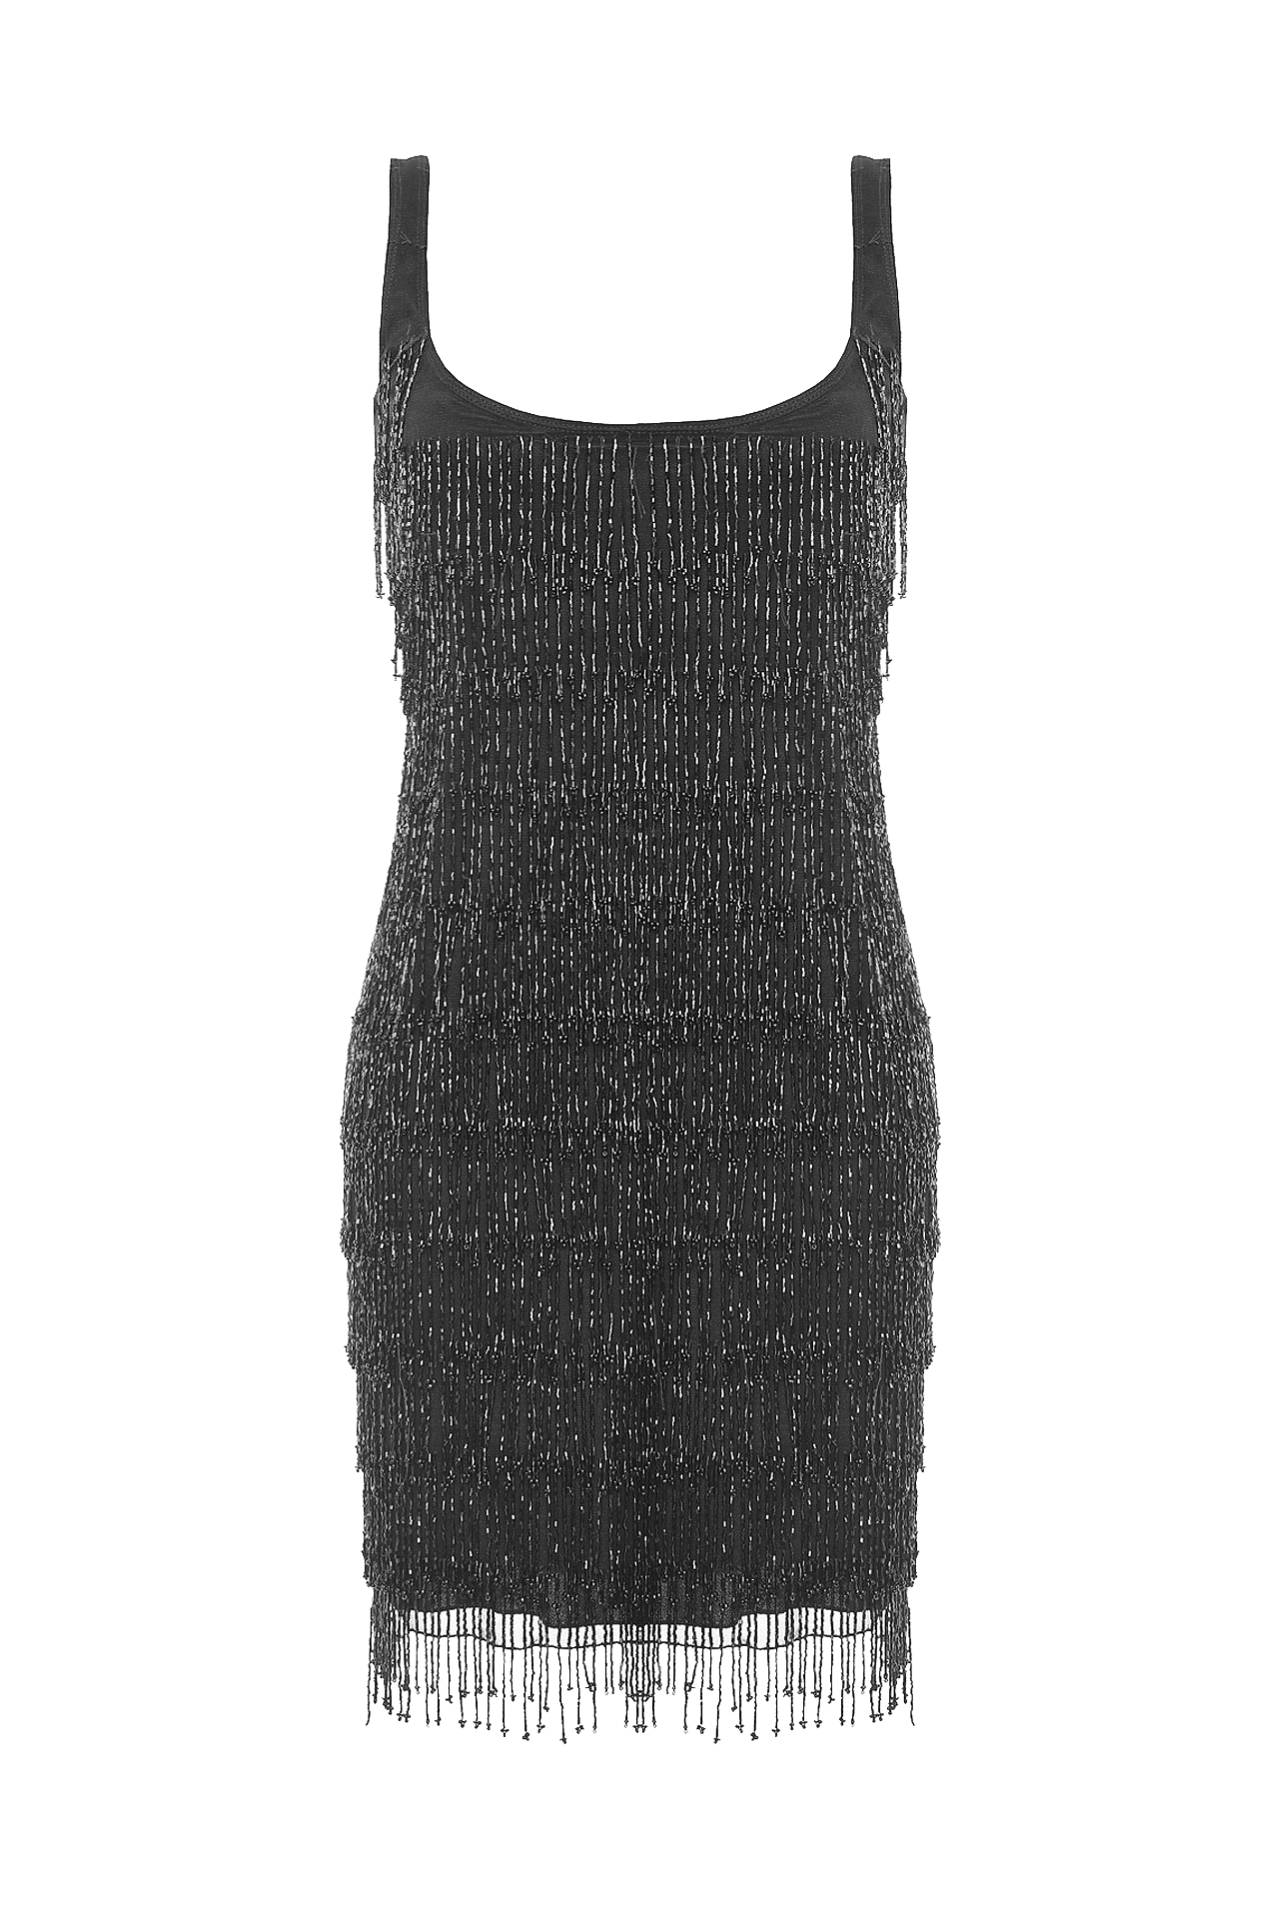 Одежда женская Платье POP COLLECTION (8028/10.2). Купить за 9870 руб.